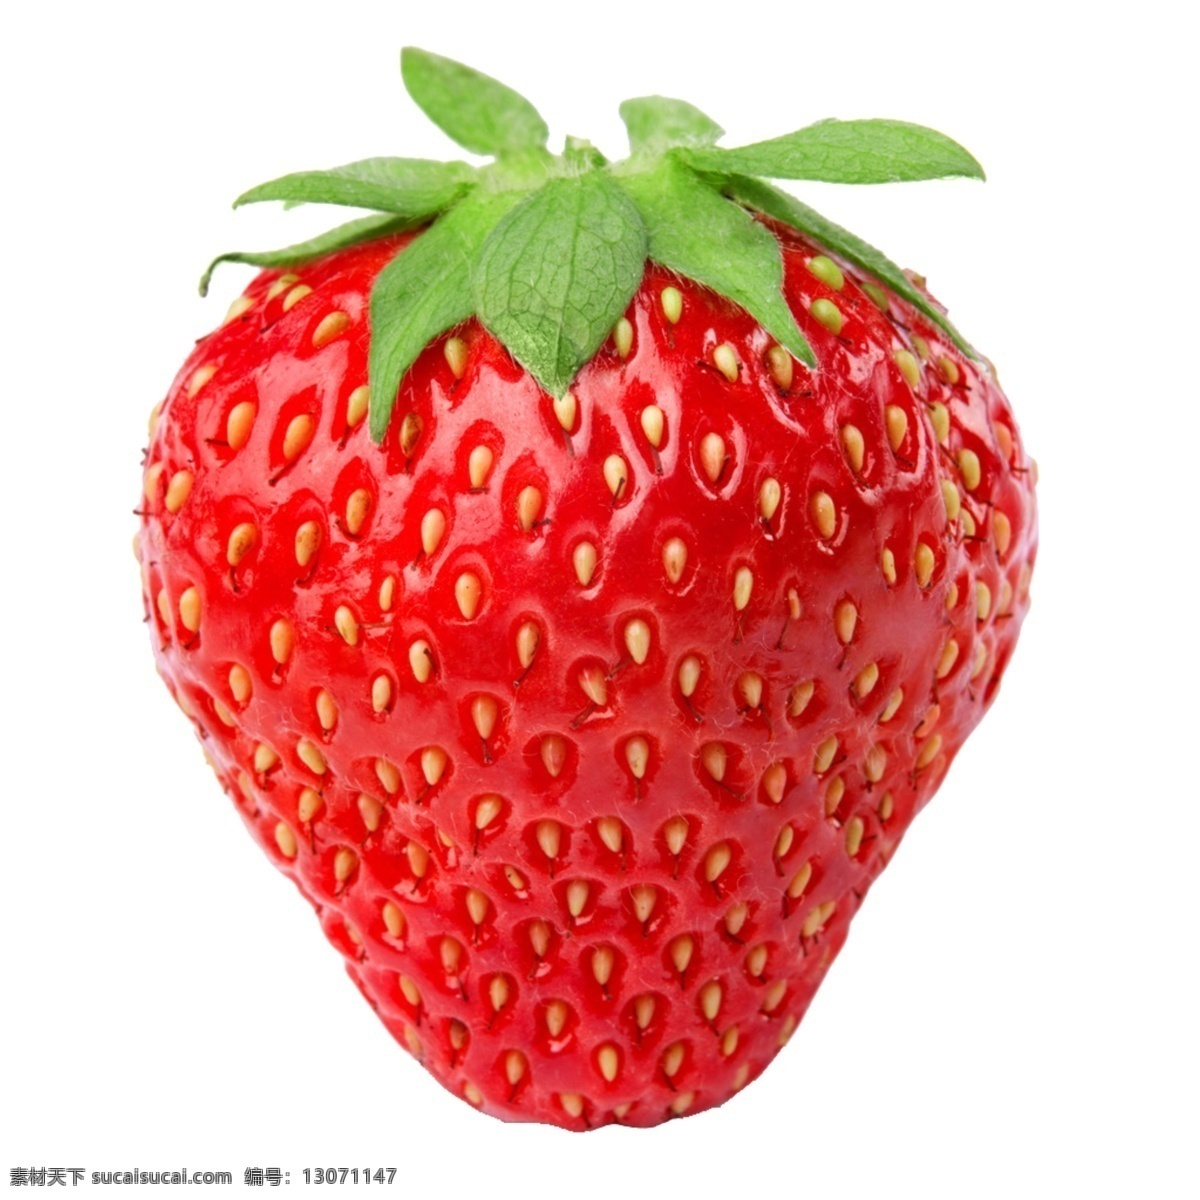 草莓图片 草莓 水果 一颗草莓 红色草莓 莓 素材图